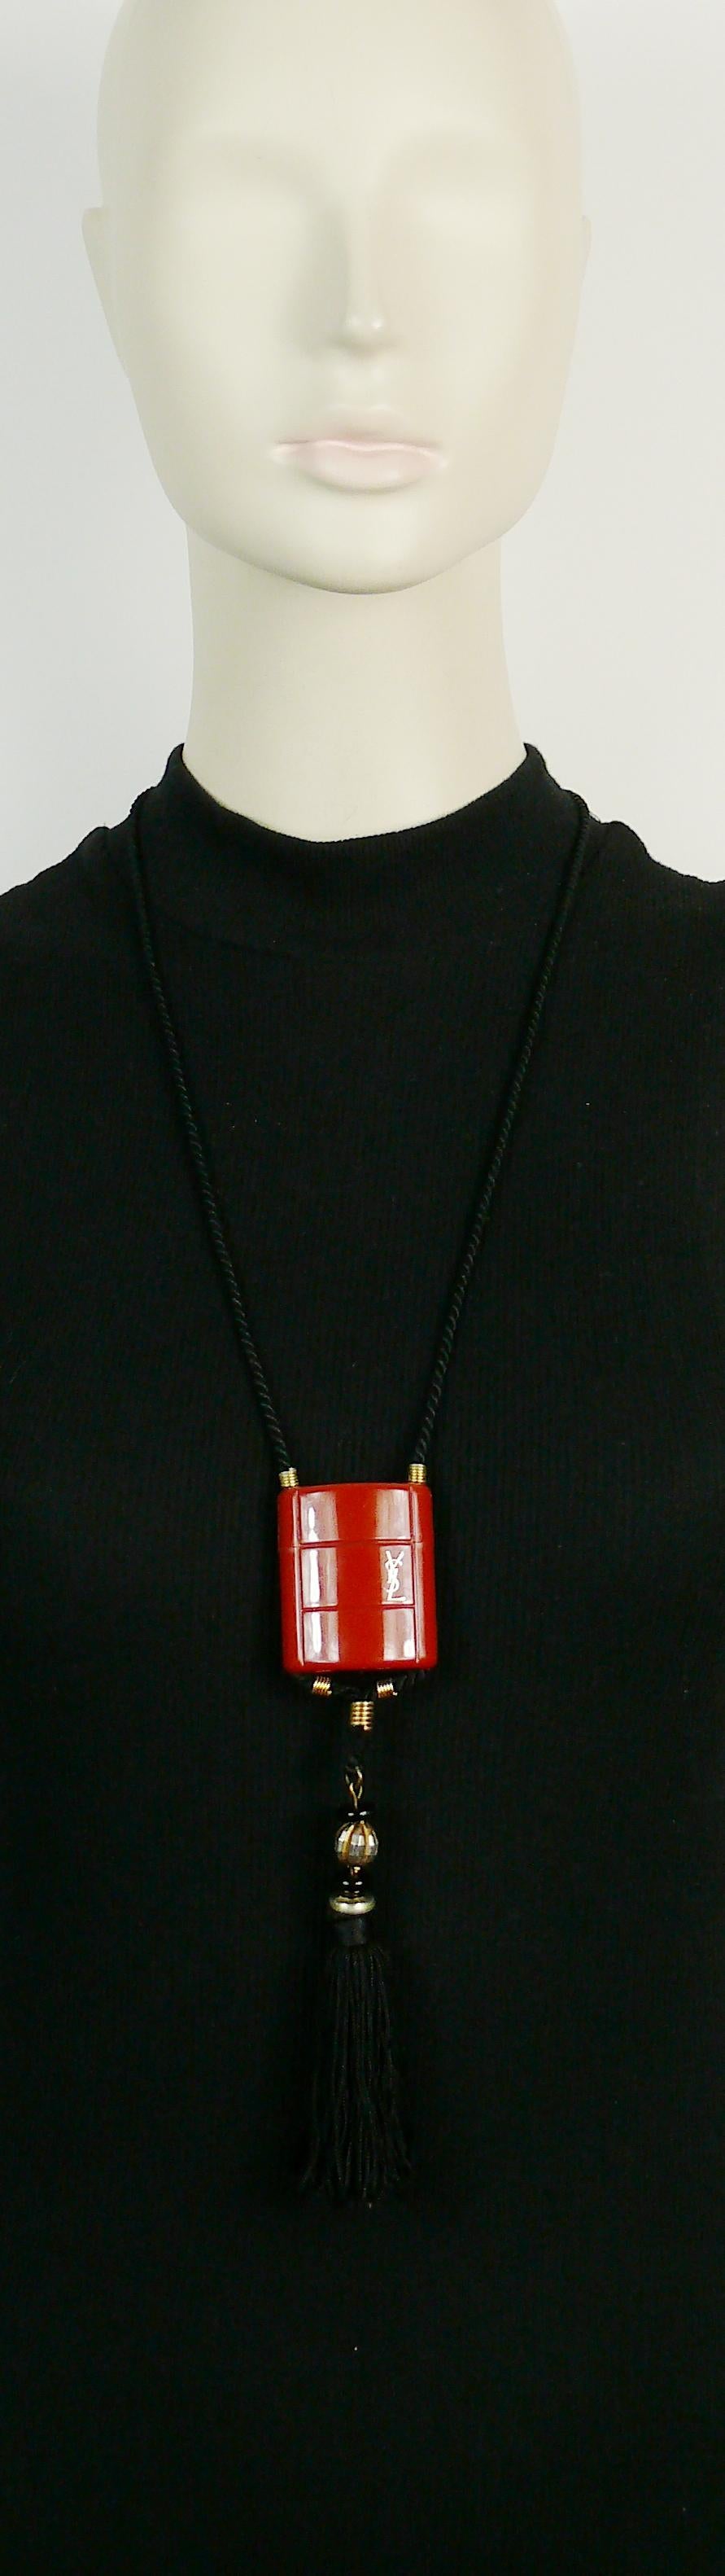 YVES SAINT LAURENT Vintage OPIUM inro Anhänger-Halskette.

Diese Halskette besteht aus einer schwarzen Kordel, einem orangefarbenen Kunststoffbehälter und einer Seidenquaste, die mit schwarzen und goldfarbenen Perlen verziert ist.

Der